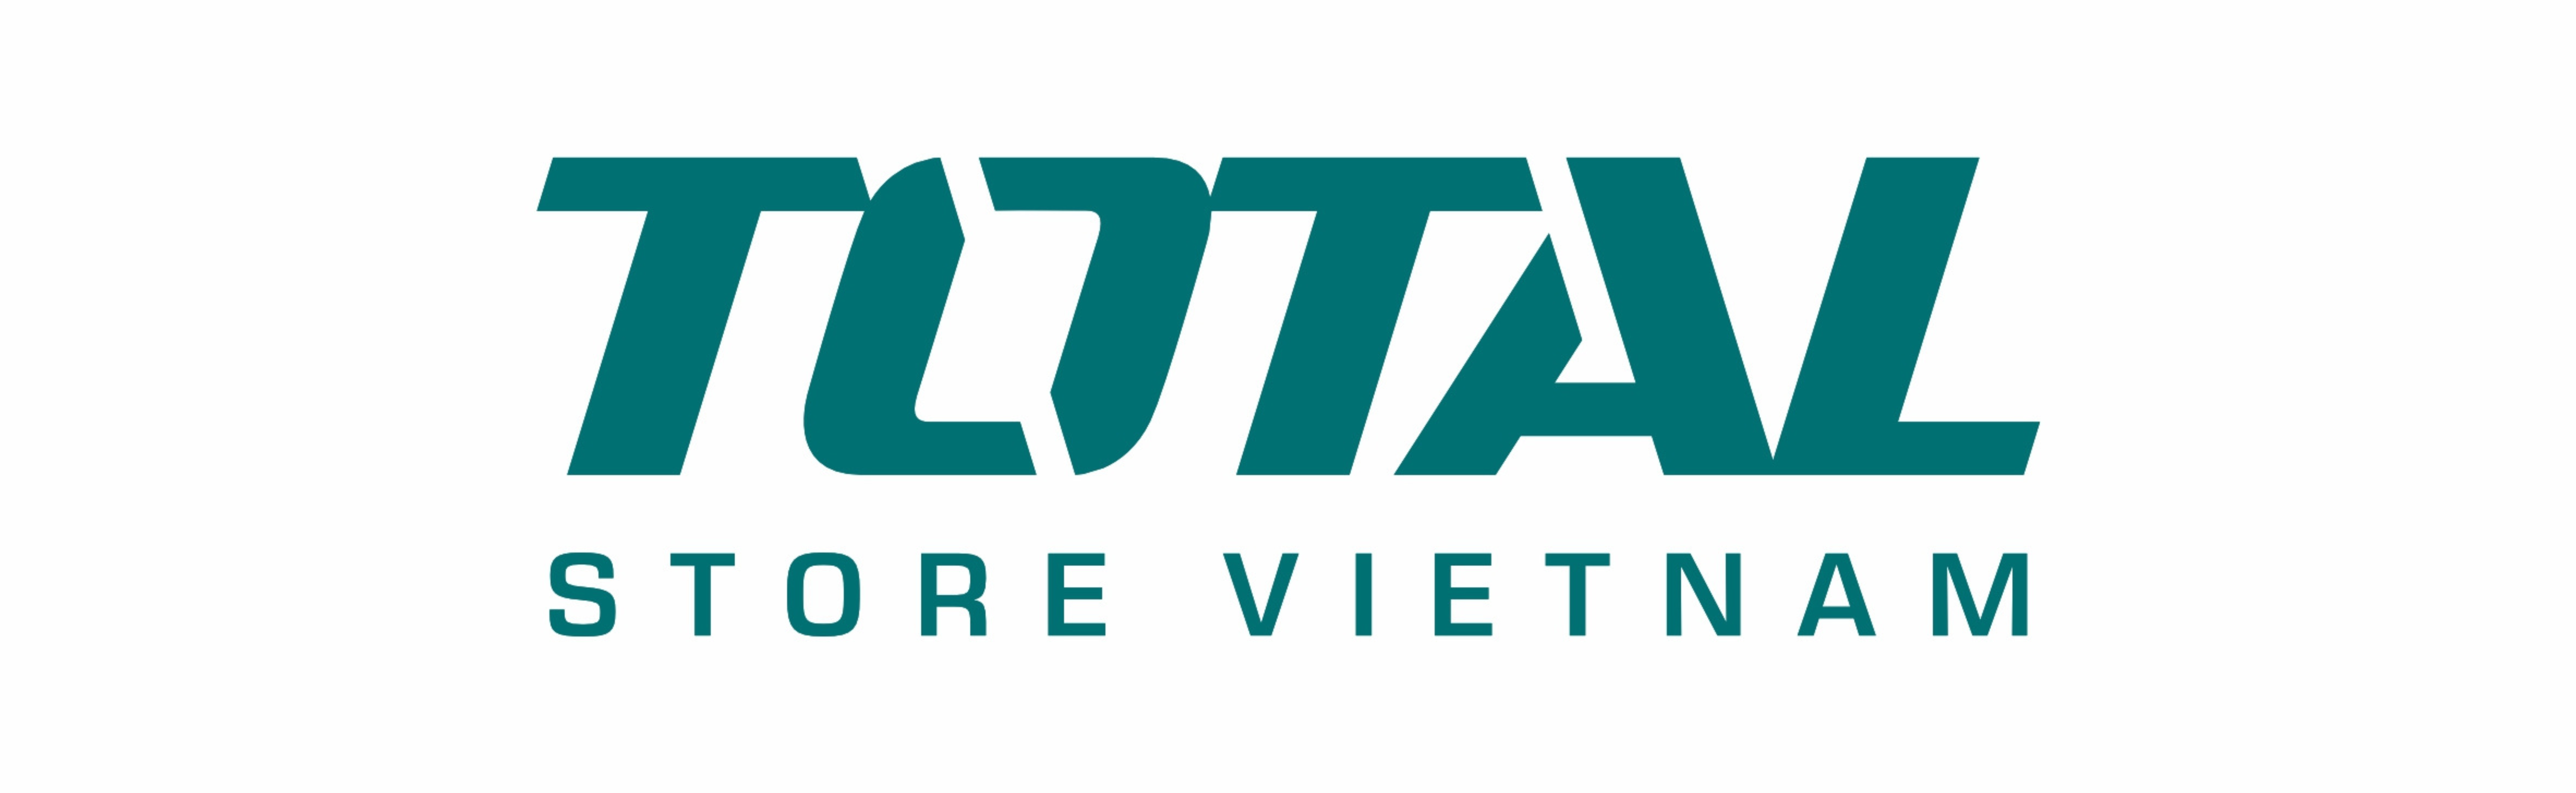 logo TOTAL Việt Nam